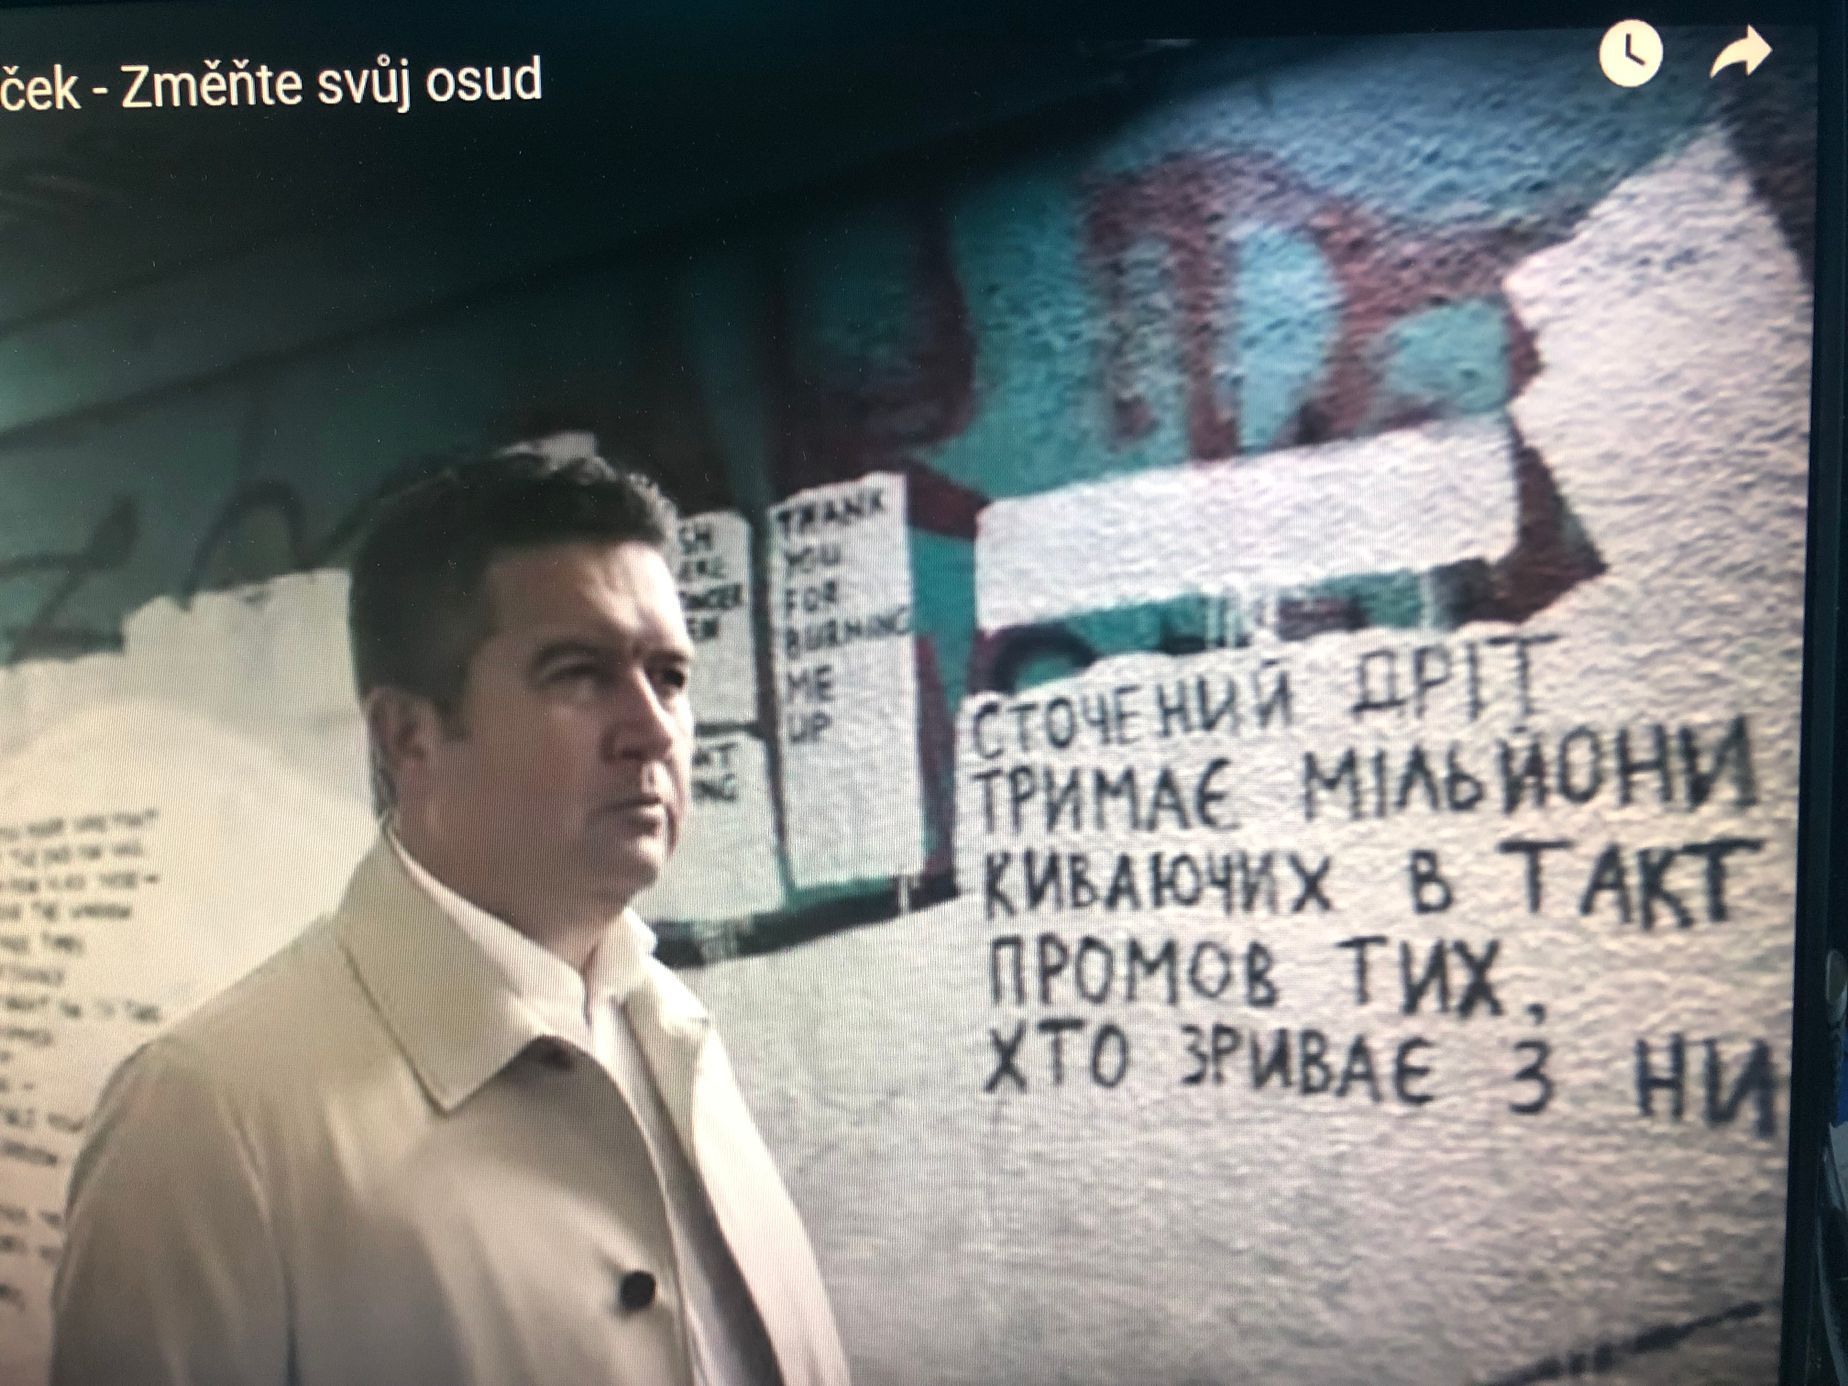 Jan Hamáček natočil předvolební klip